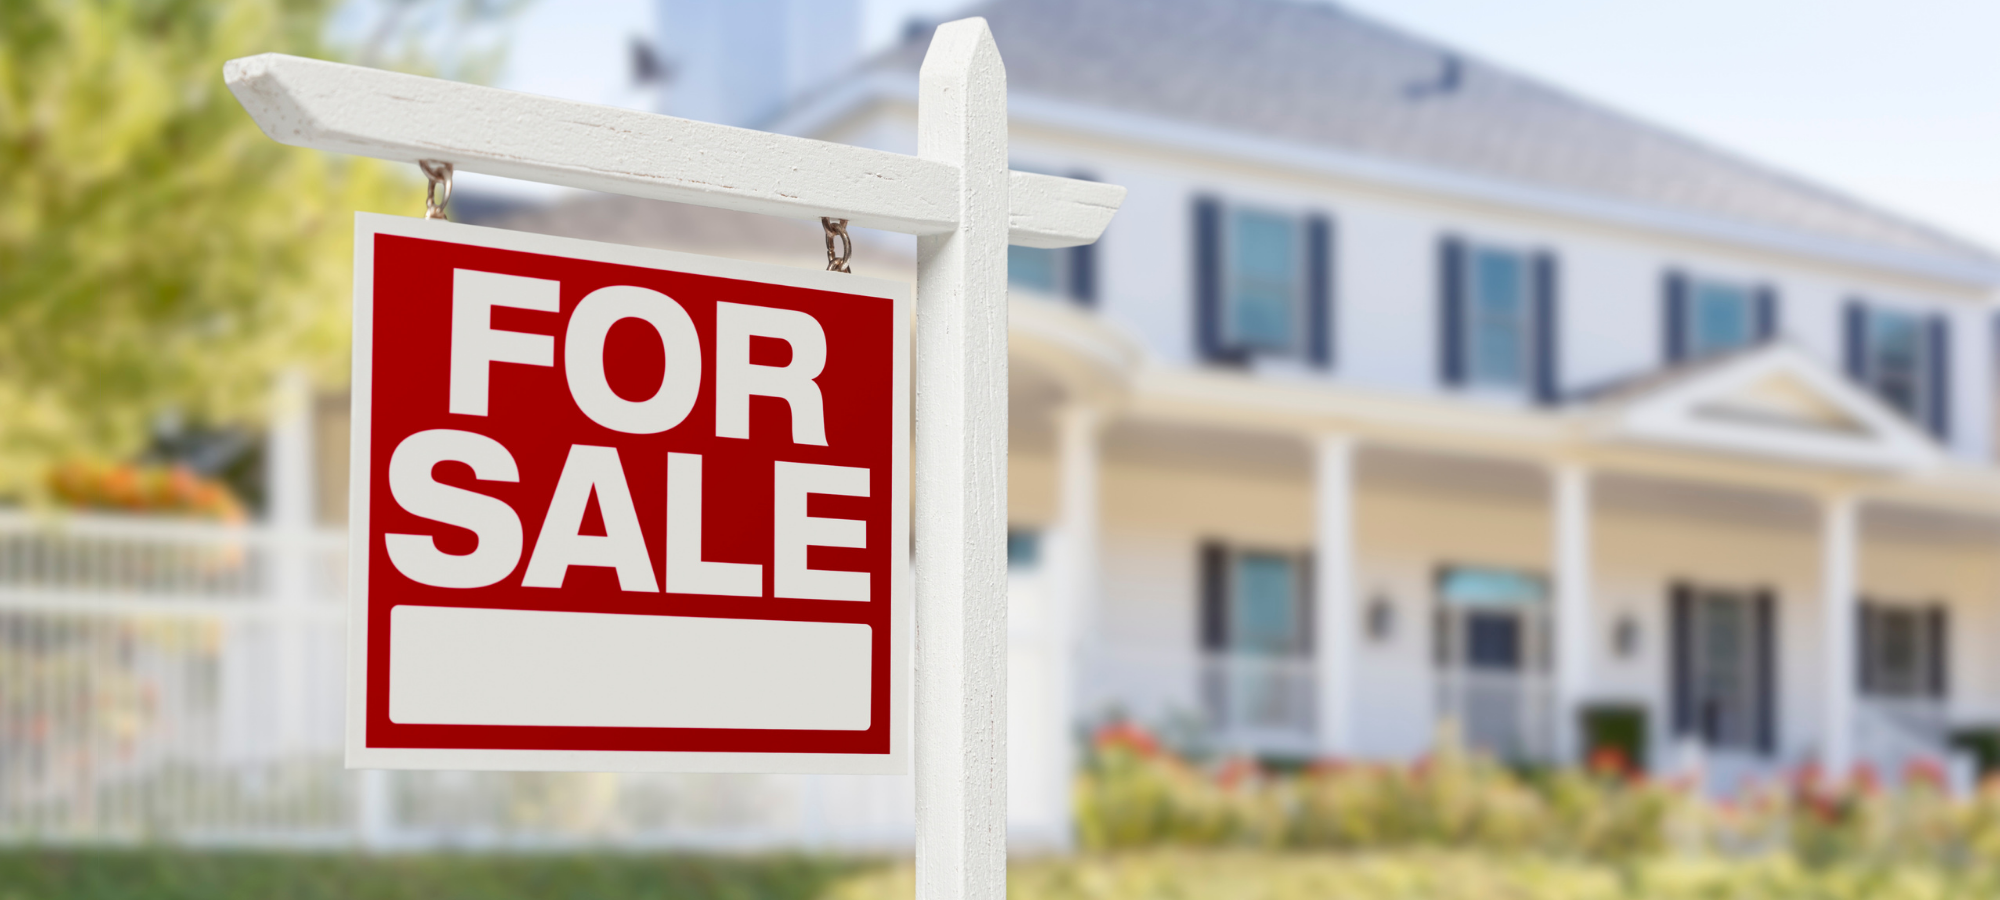 Prepare to Sell Home Checklist PDF 2021